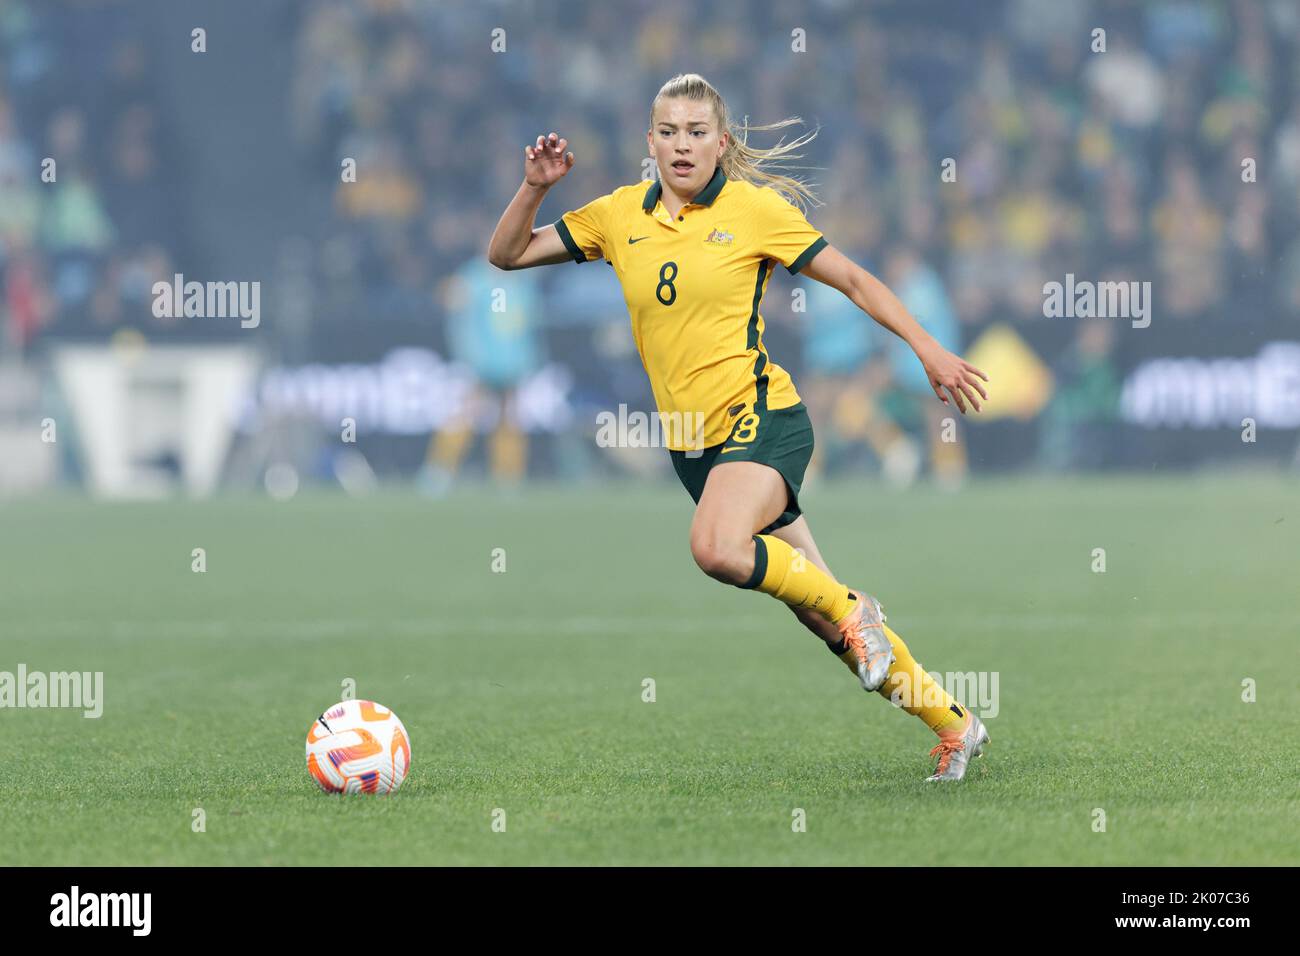 SYDNEY, AUSTRALIA - SETTEMBRE 6: Charlotte Grant of Australia correndo con la palla durante l'International friendly Match tra Australia e Cana Foto Stock